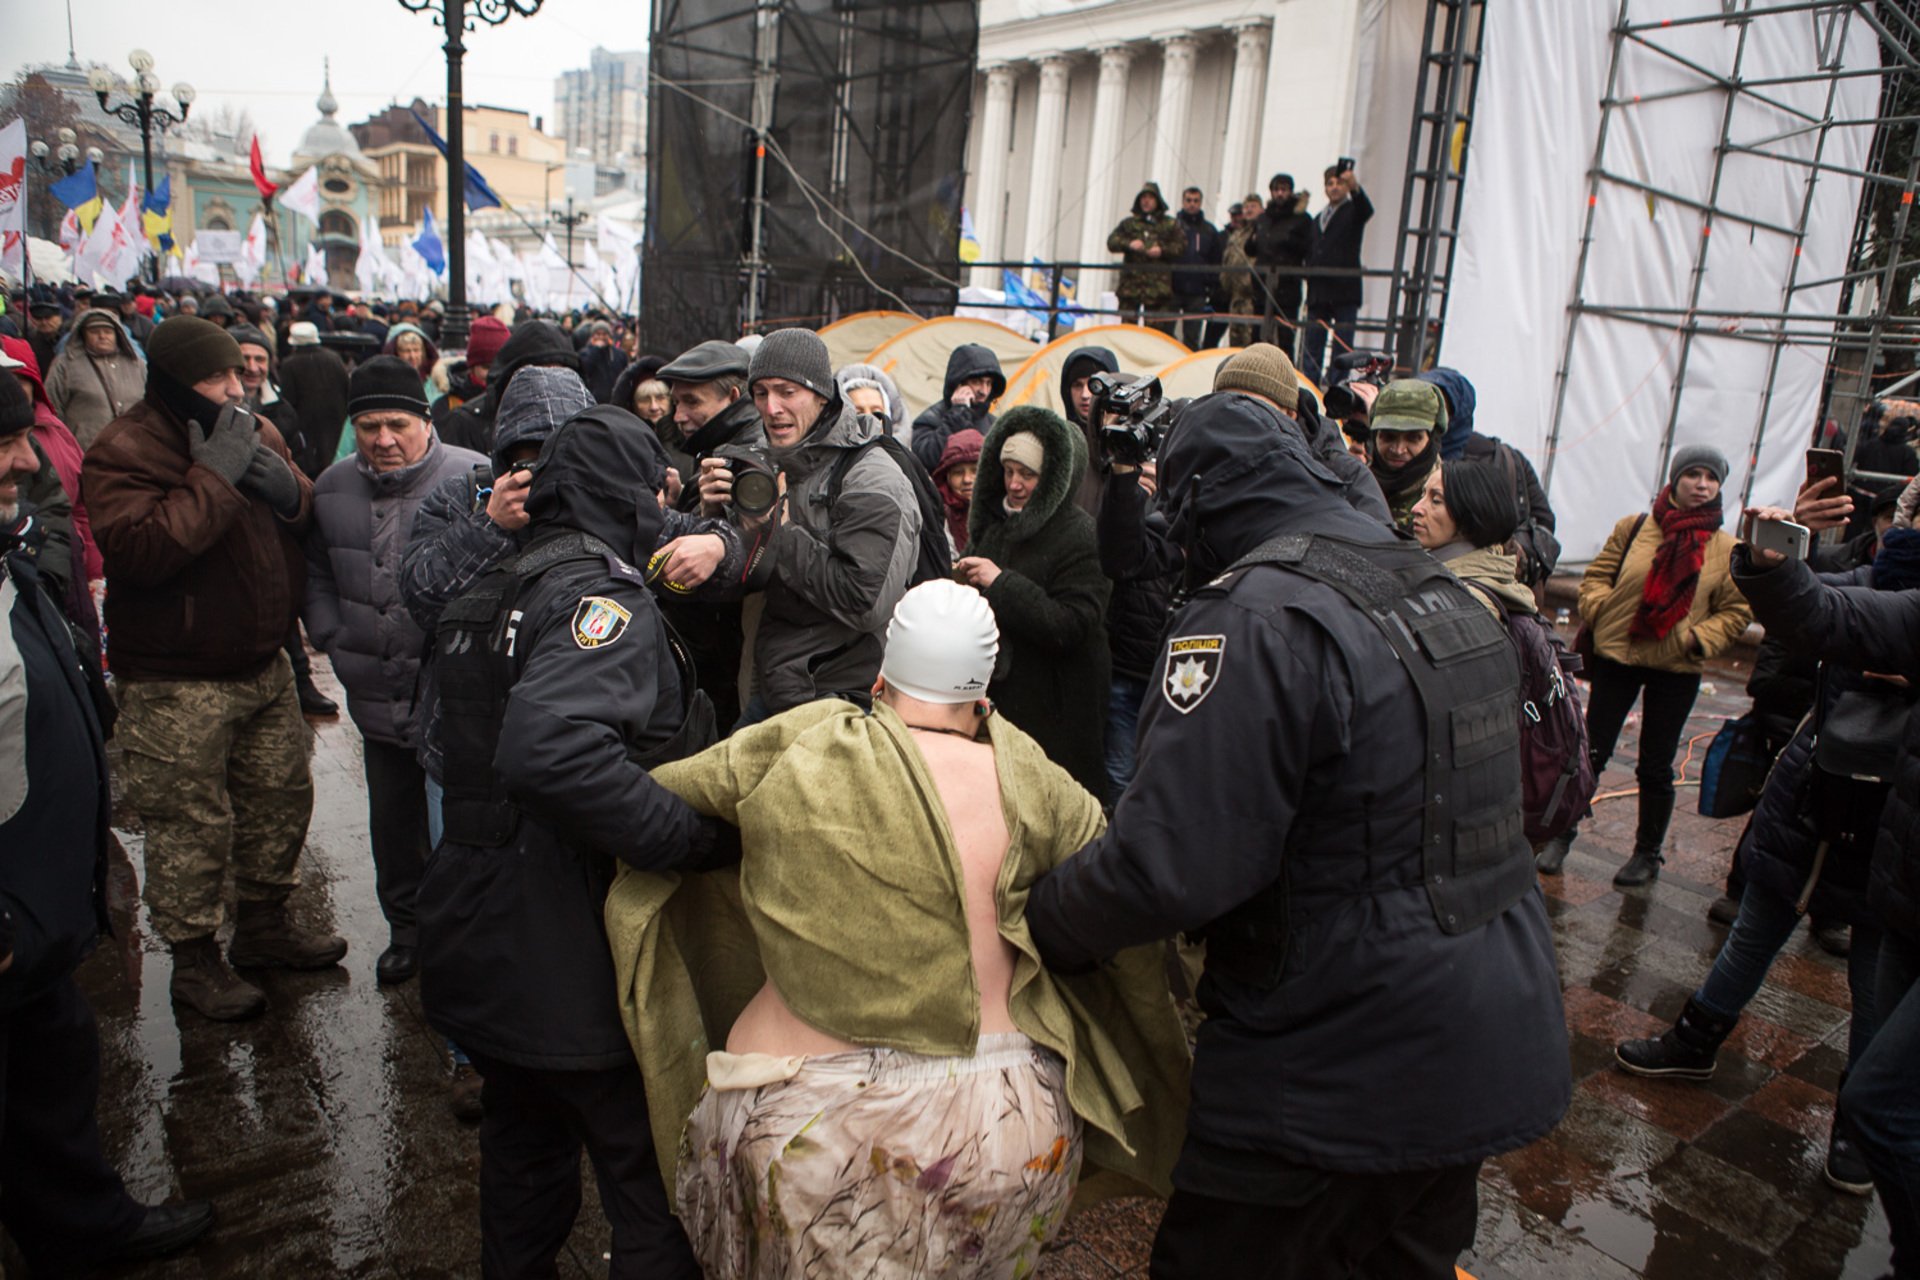 Femen, Верховная Рада, активистка, акция протеста, Петр Порошенко, Михаил Саакашвили, политика, здание, палаточный городок